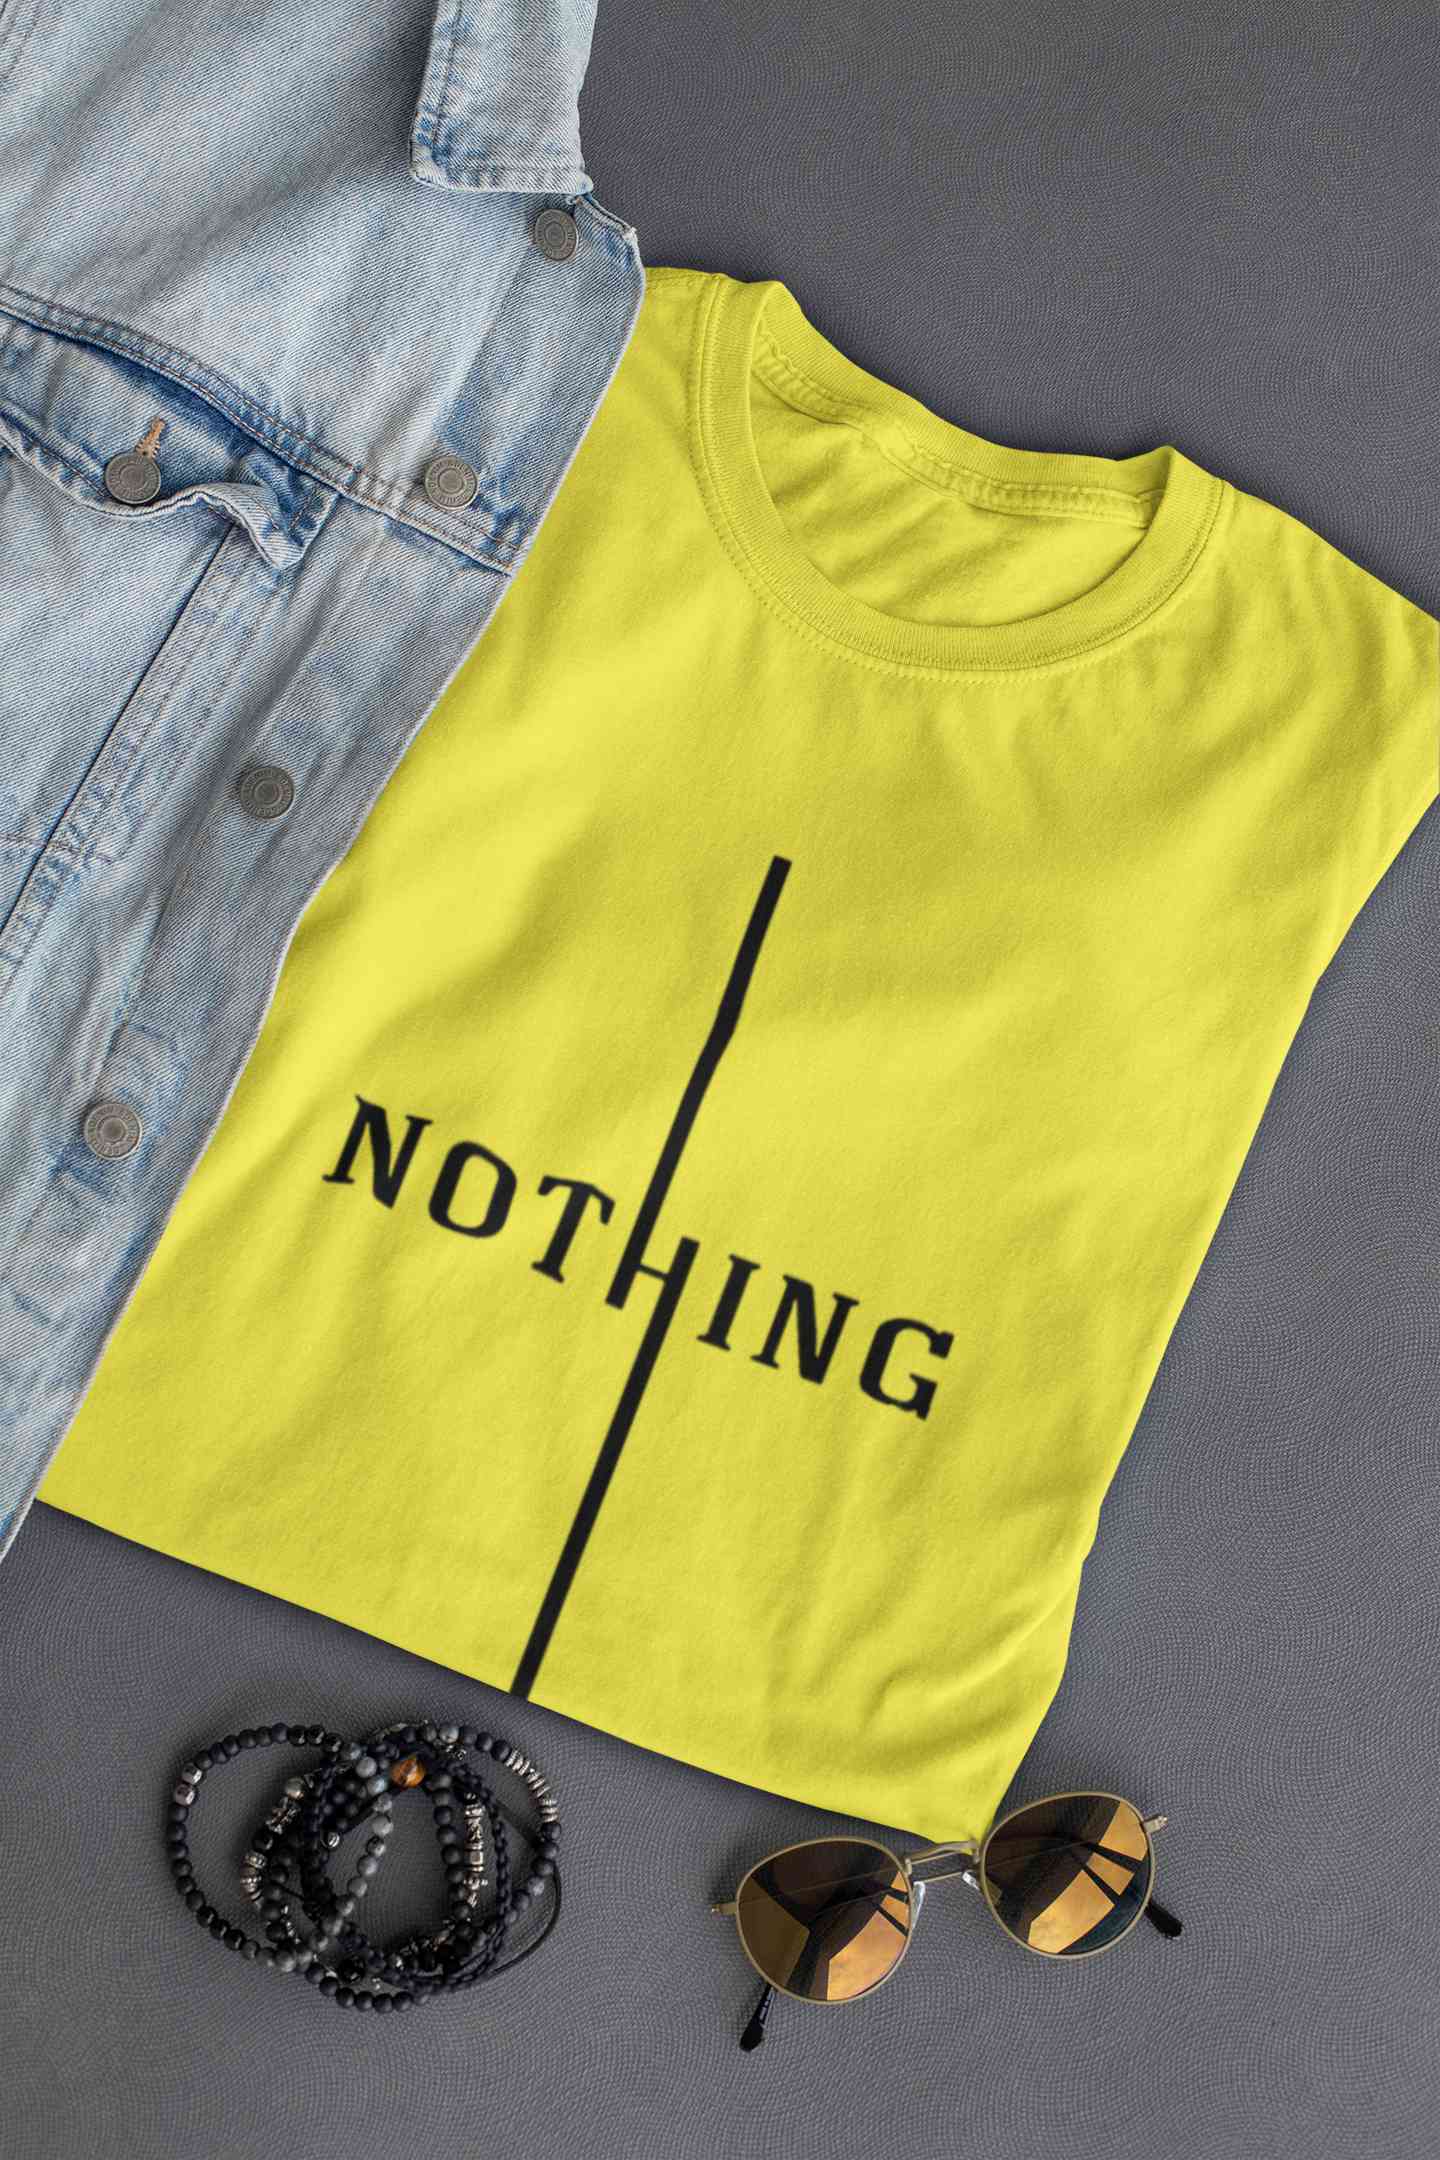 Nothing Mens Half Sleeves T-shirt- FunkyTeesClub